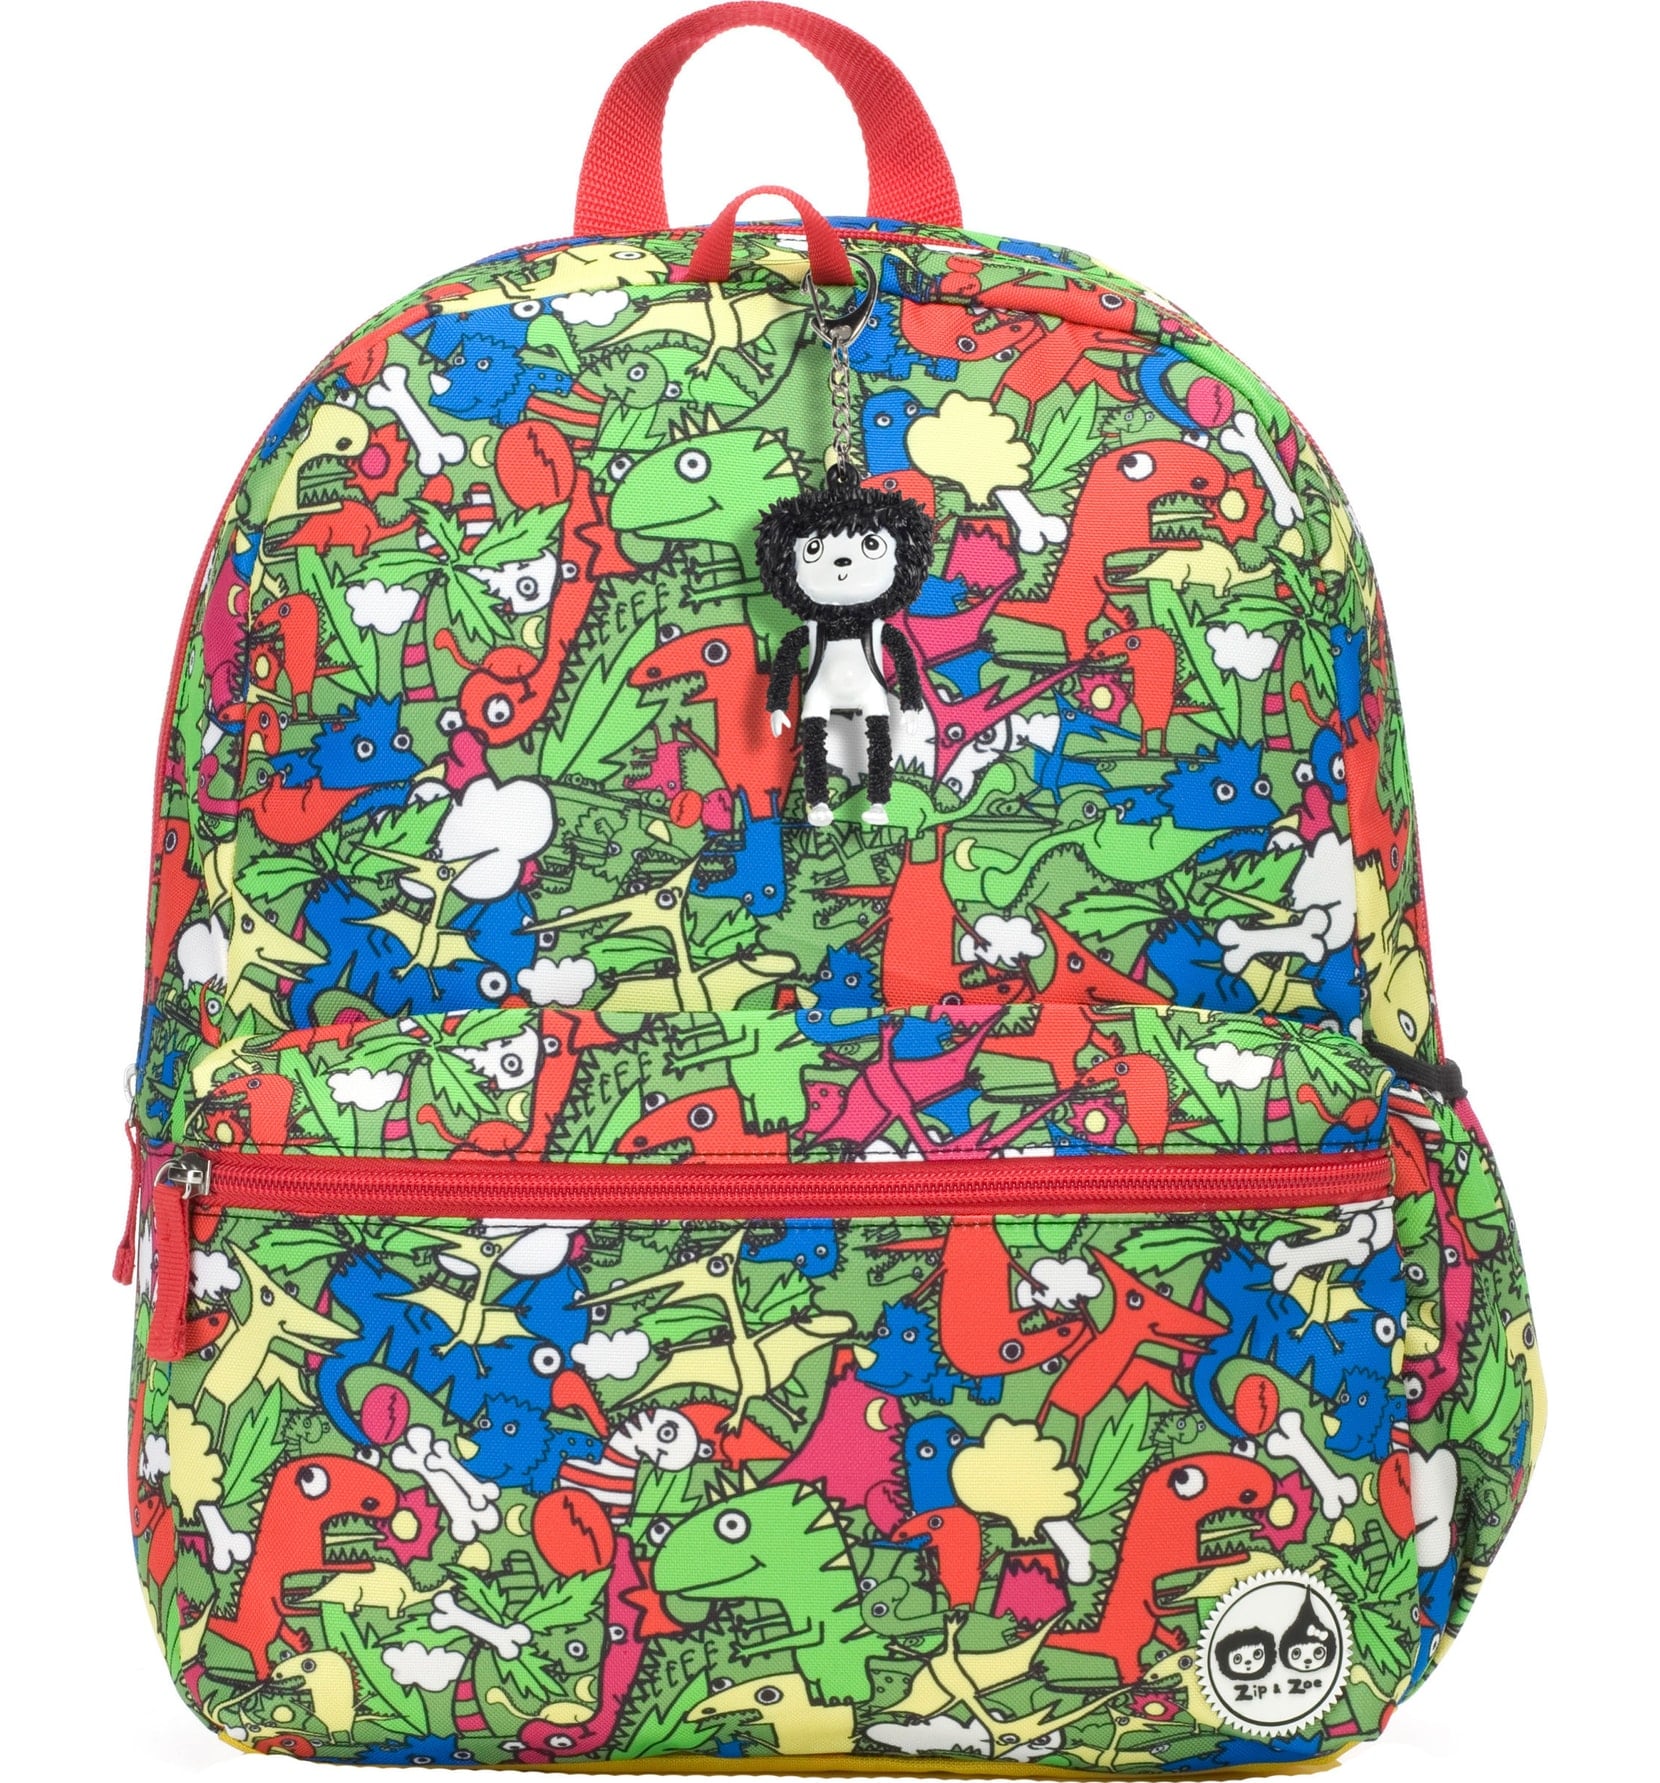 Cute Backpacks For Kids 18 Popsugar Family